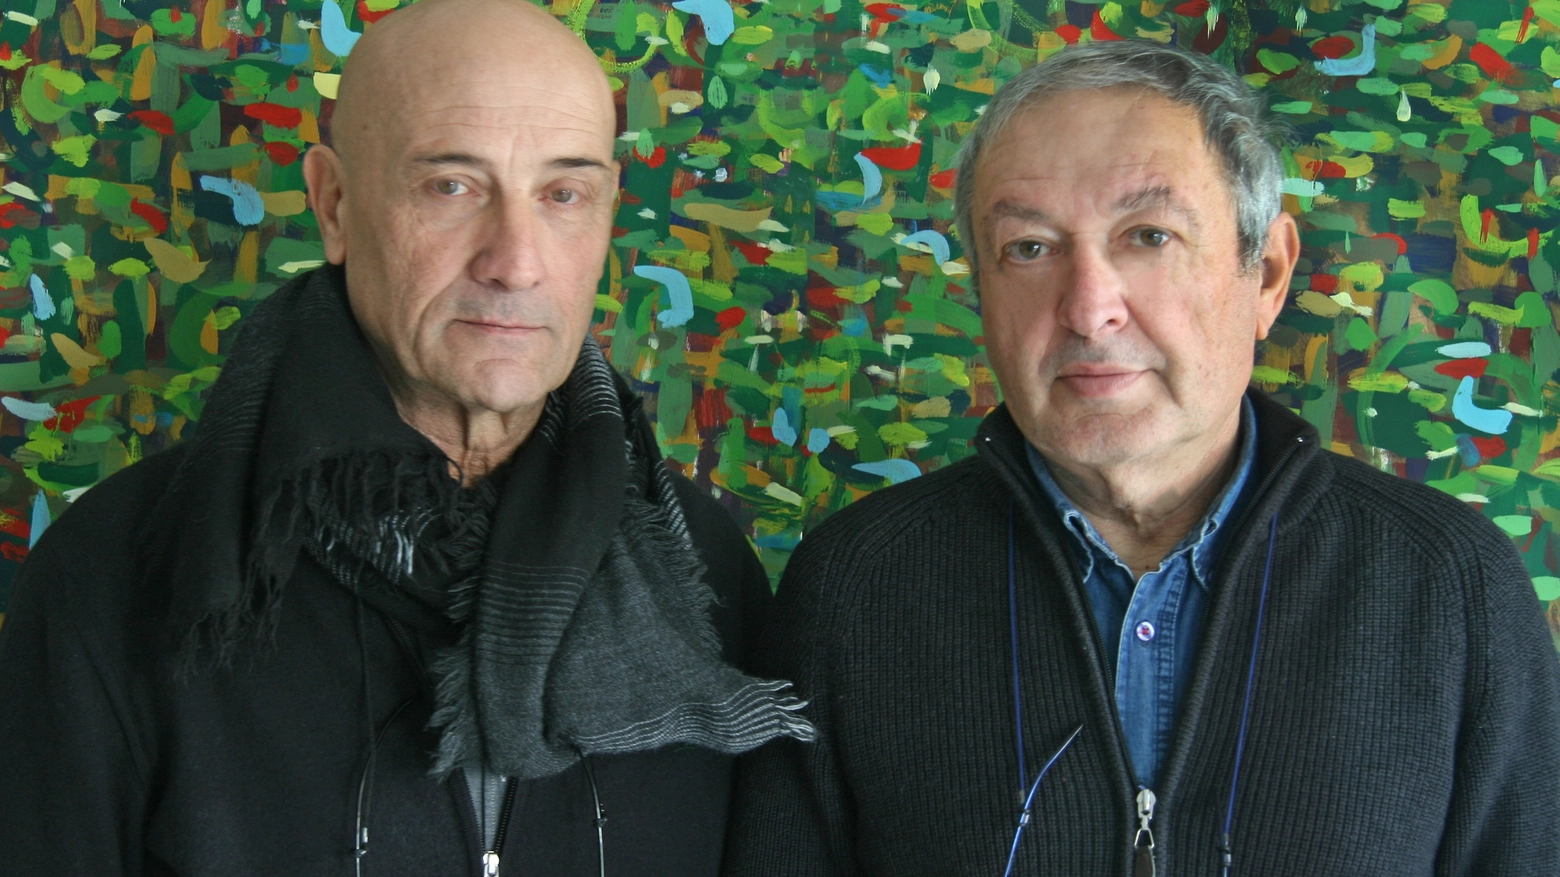 Carlo Tartarini e Roberto Prudente, due degli artisti in mostra